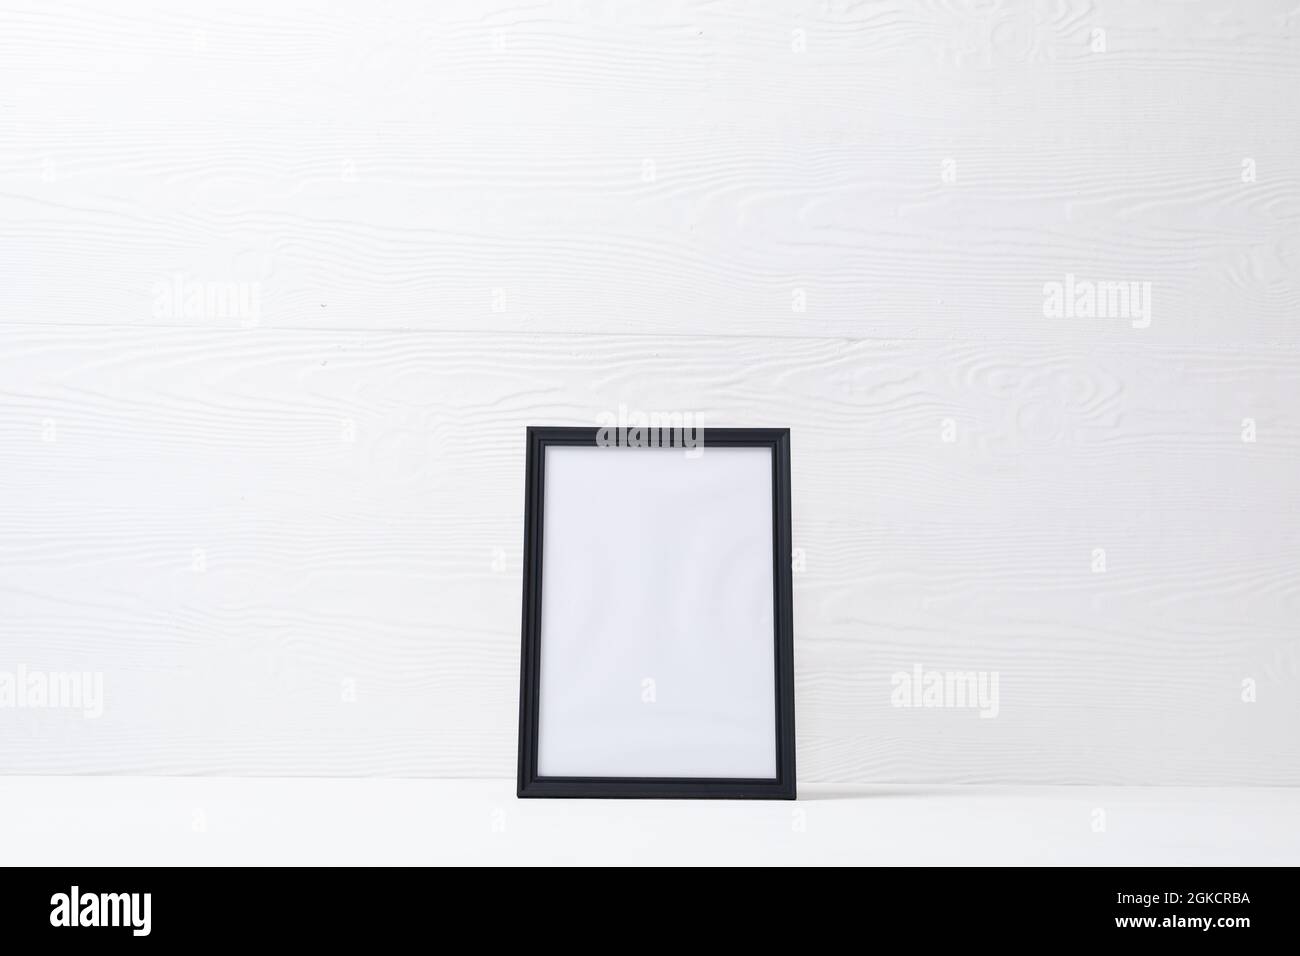 Composición de la carta blanca en marco negro con espacio de copia sobre fondo blanco Foto de stock